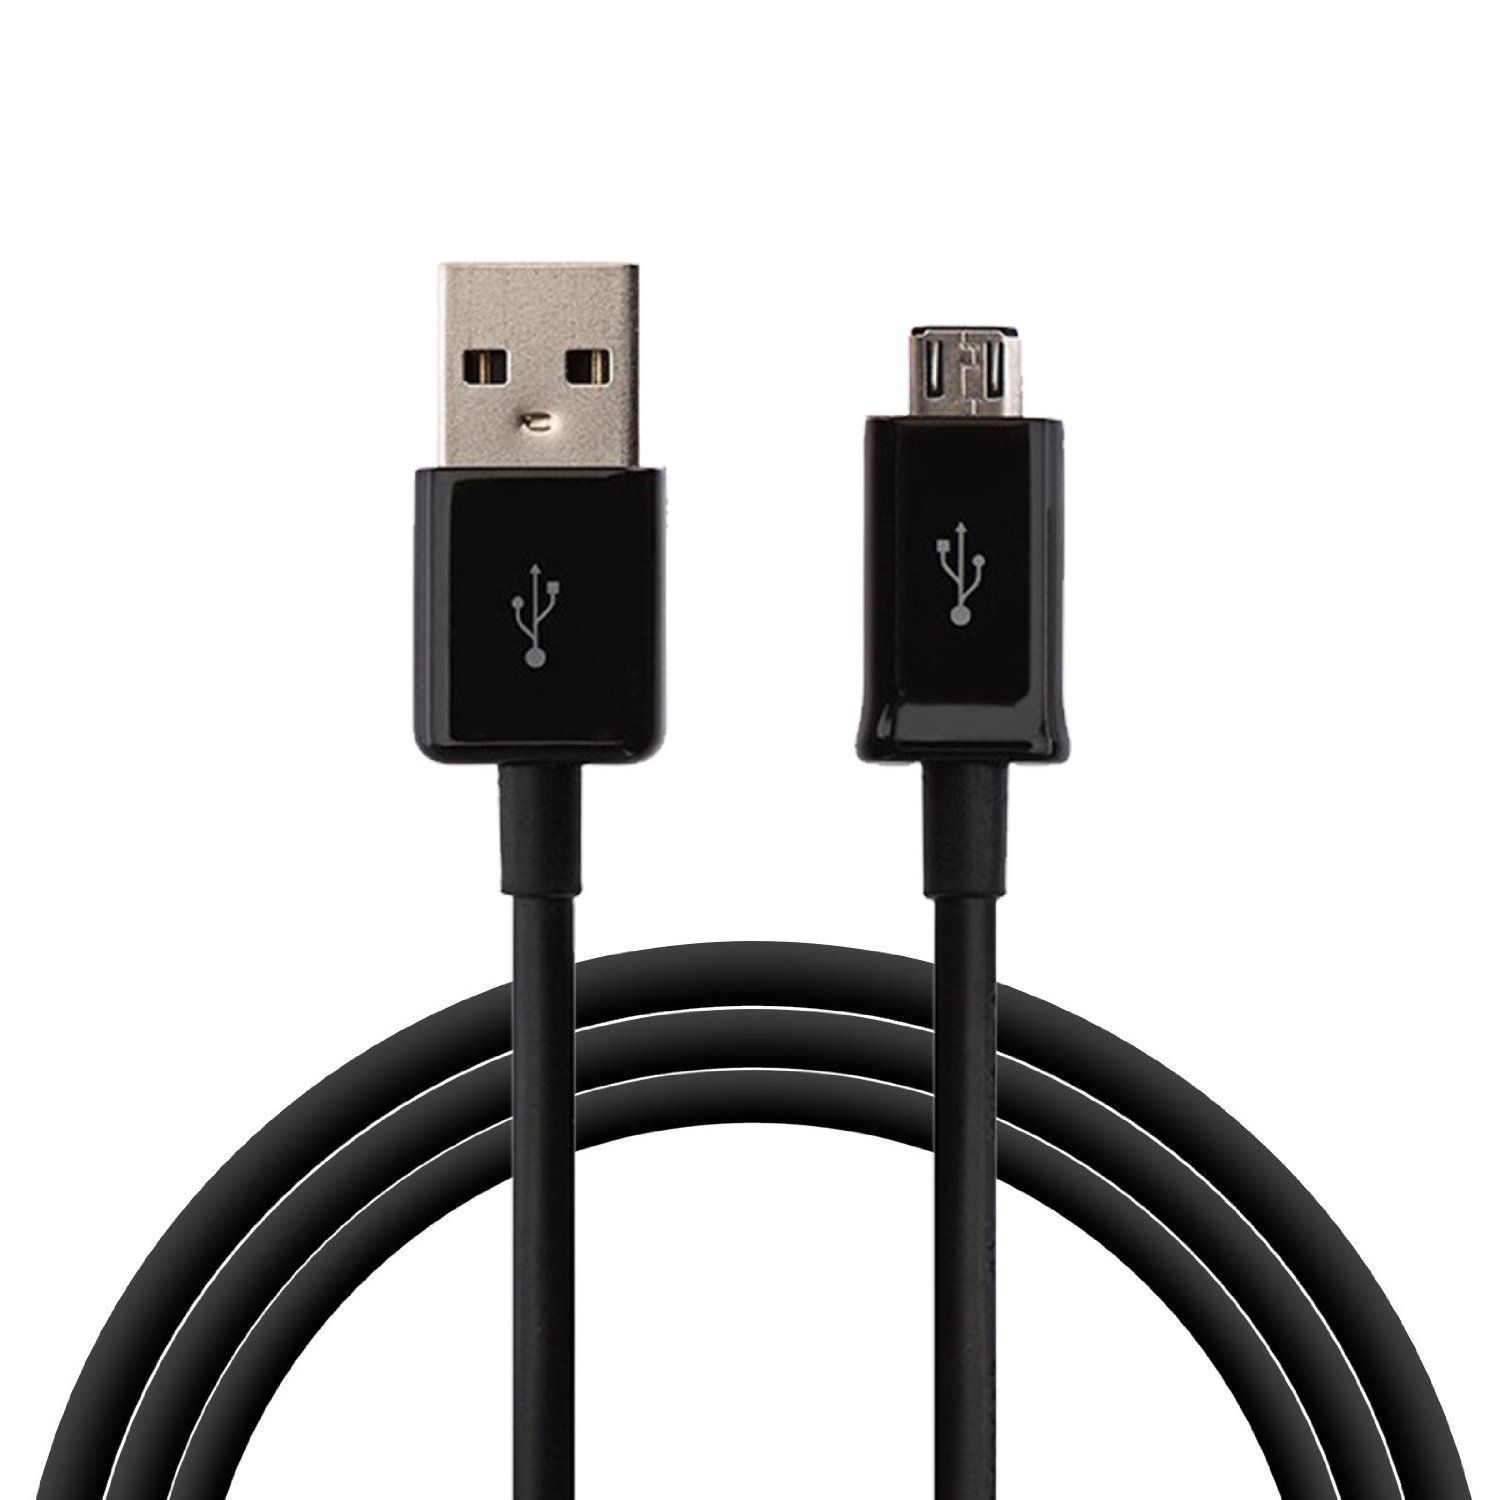     			CASVO 2.1A Redmi MI USB Data Cable Black-1M for Redmi Note 5, Note 5 Pro, Note 4, Note 3, Mi Y2, Mi A1, Redmi 6, Mi 6 Pro, Redmi Y1